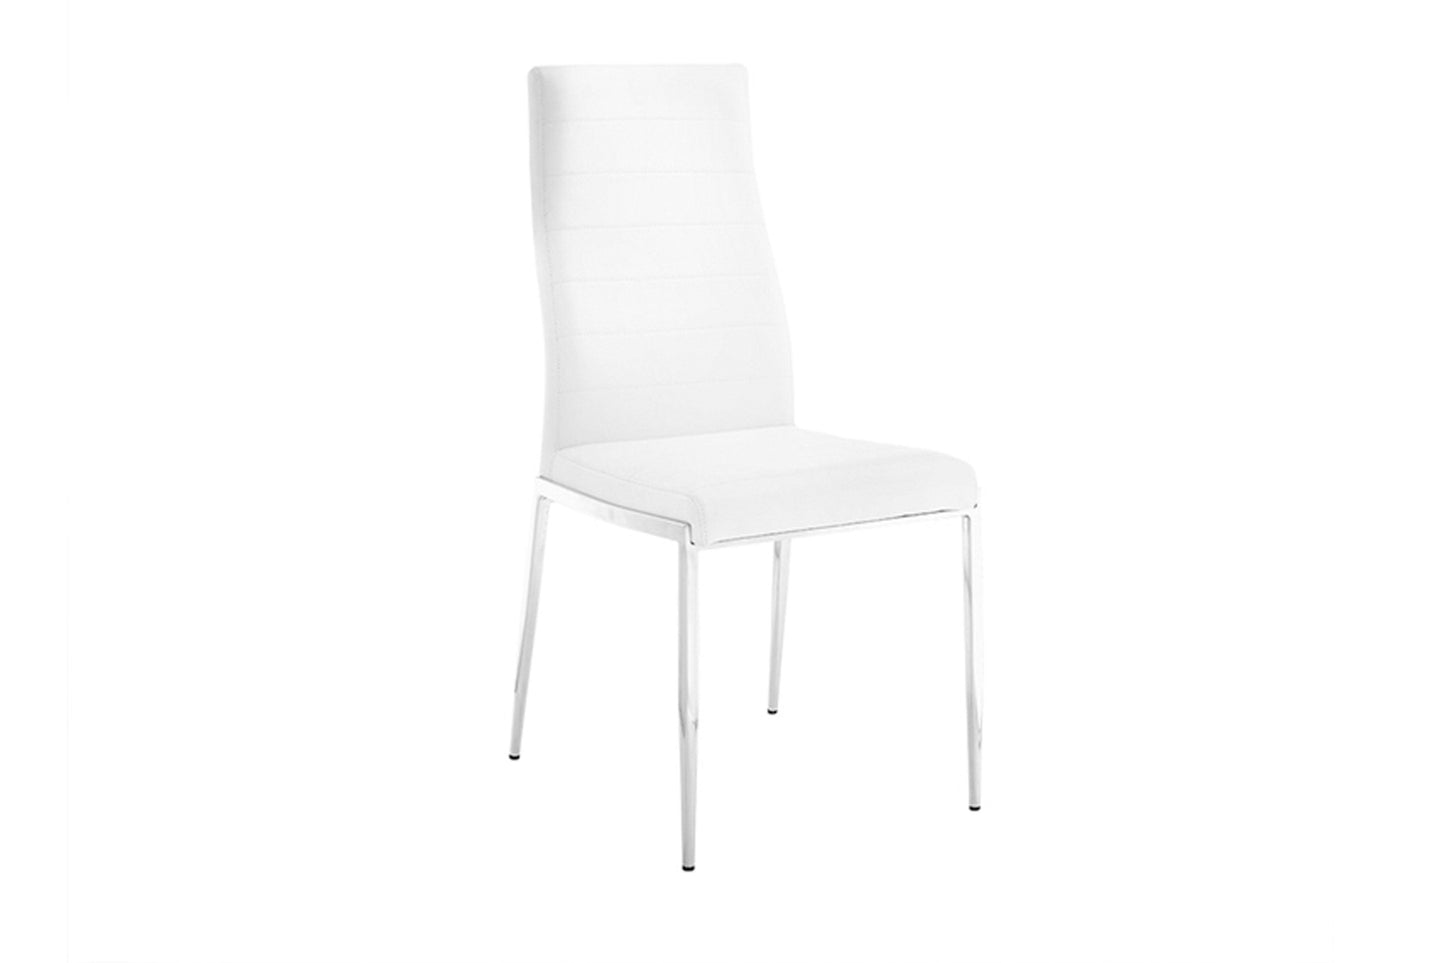 Firenze Dining Chair White Model CB-511WH - Venini Furniture 